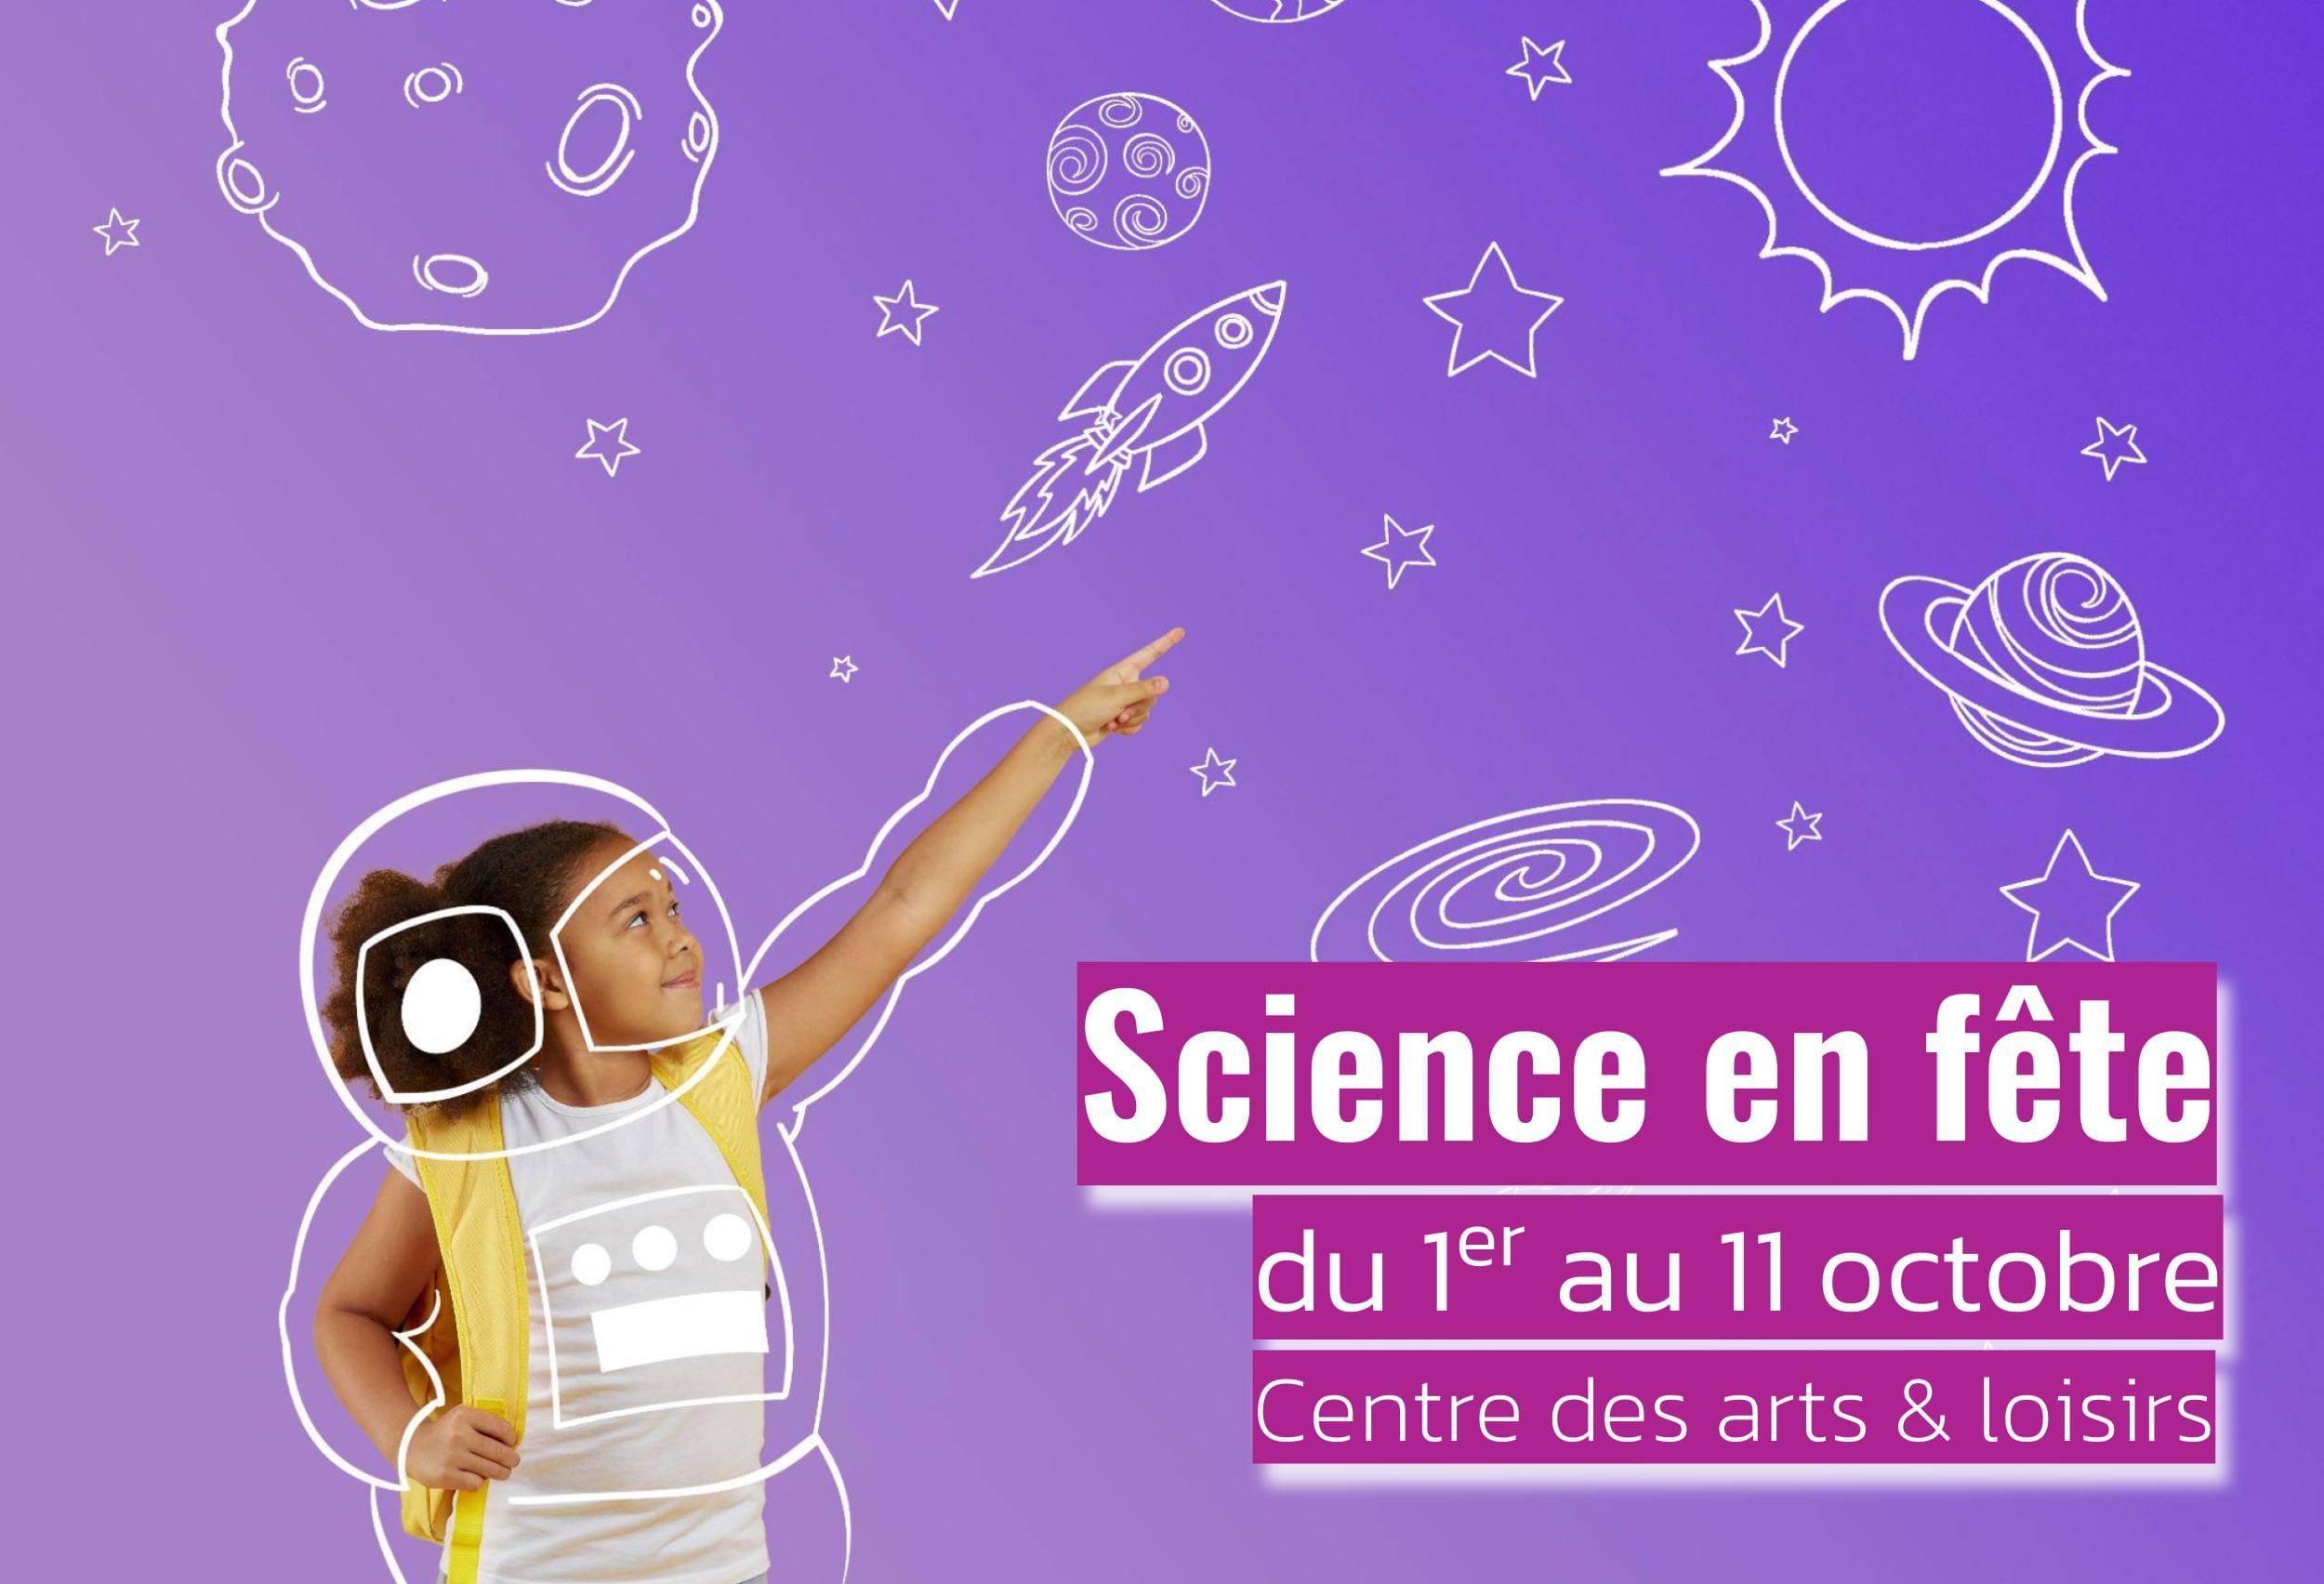 Science en fête à Buchelay du 1er au 11 octobre 2021